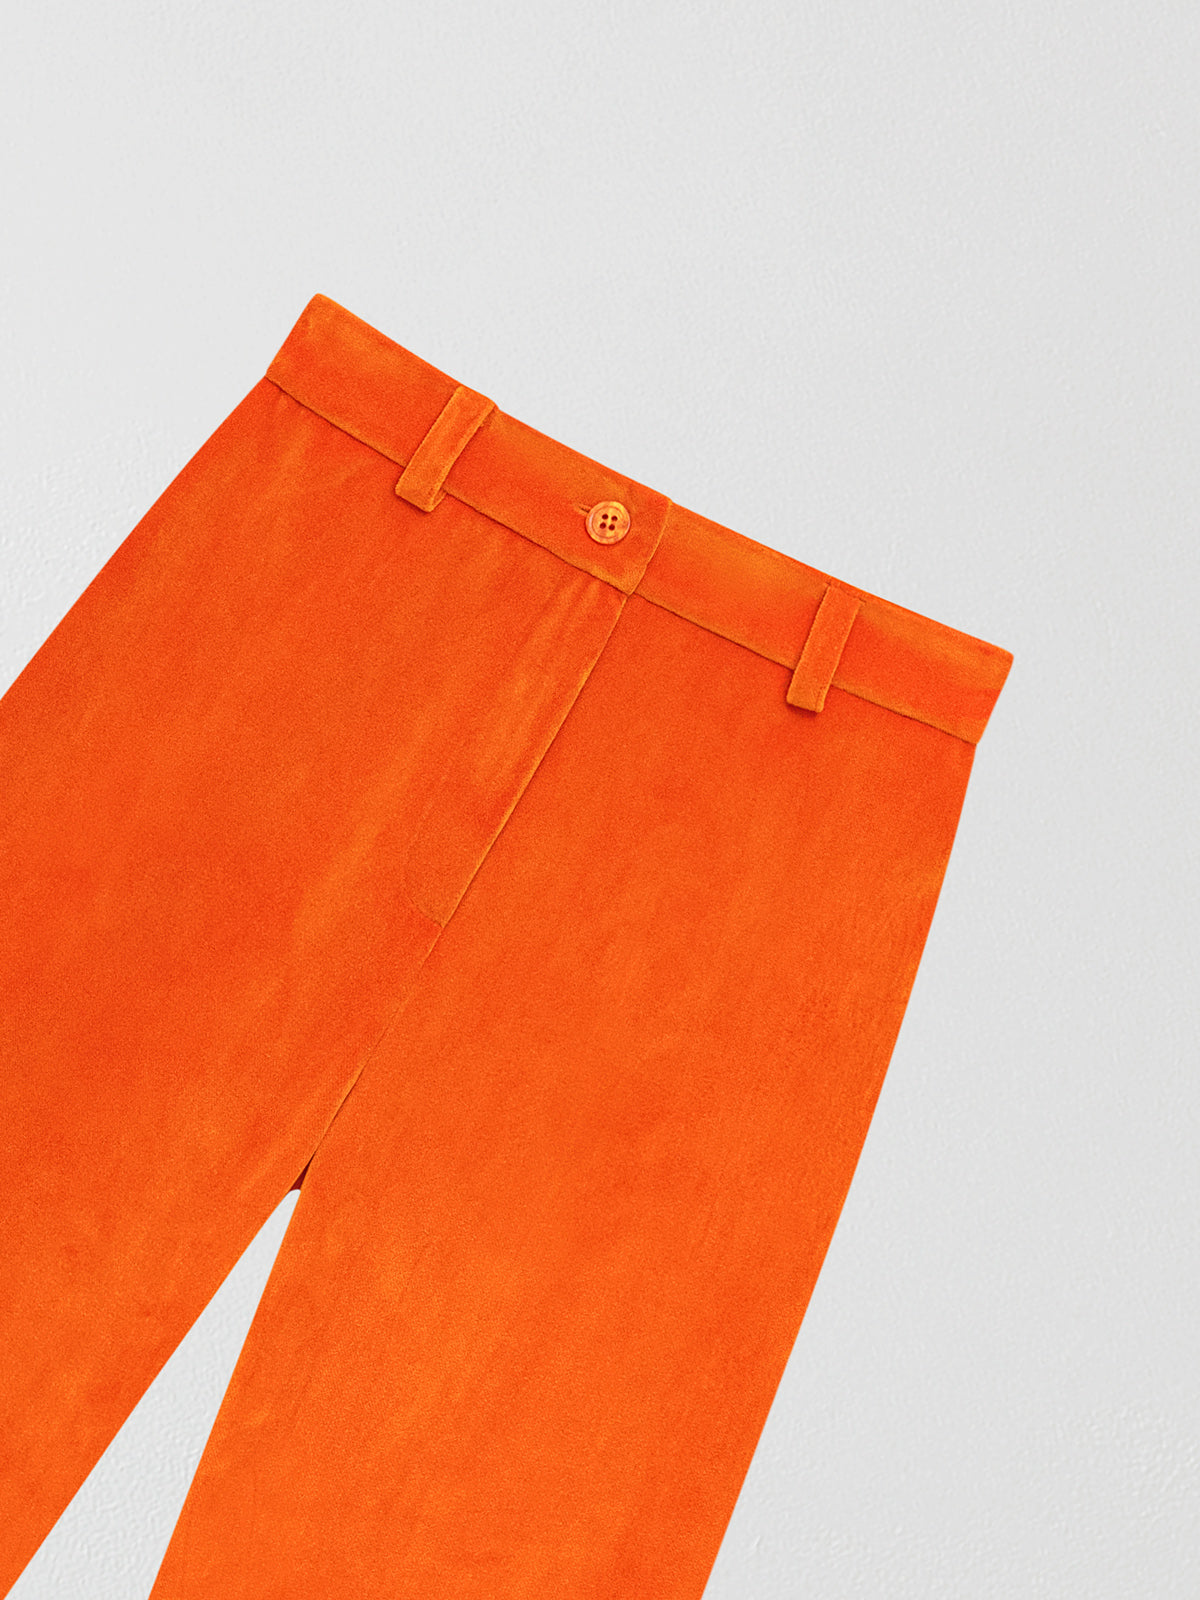 Orange velvet trousers.